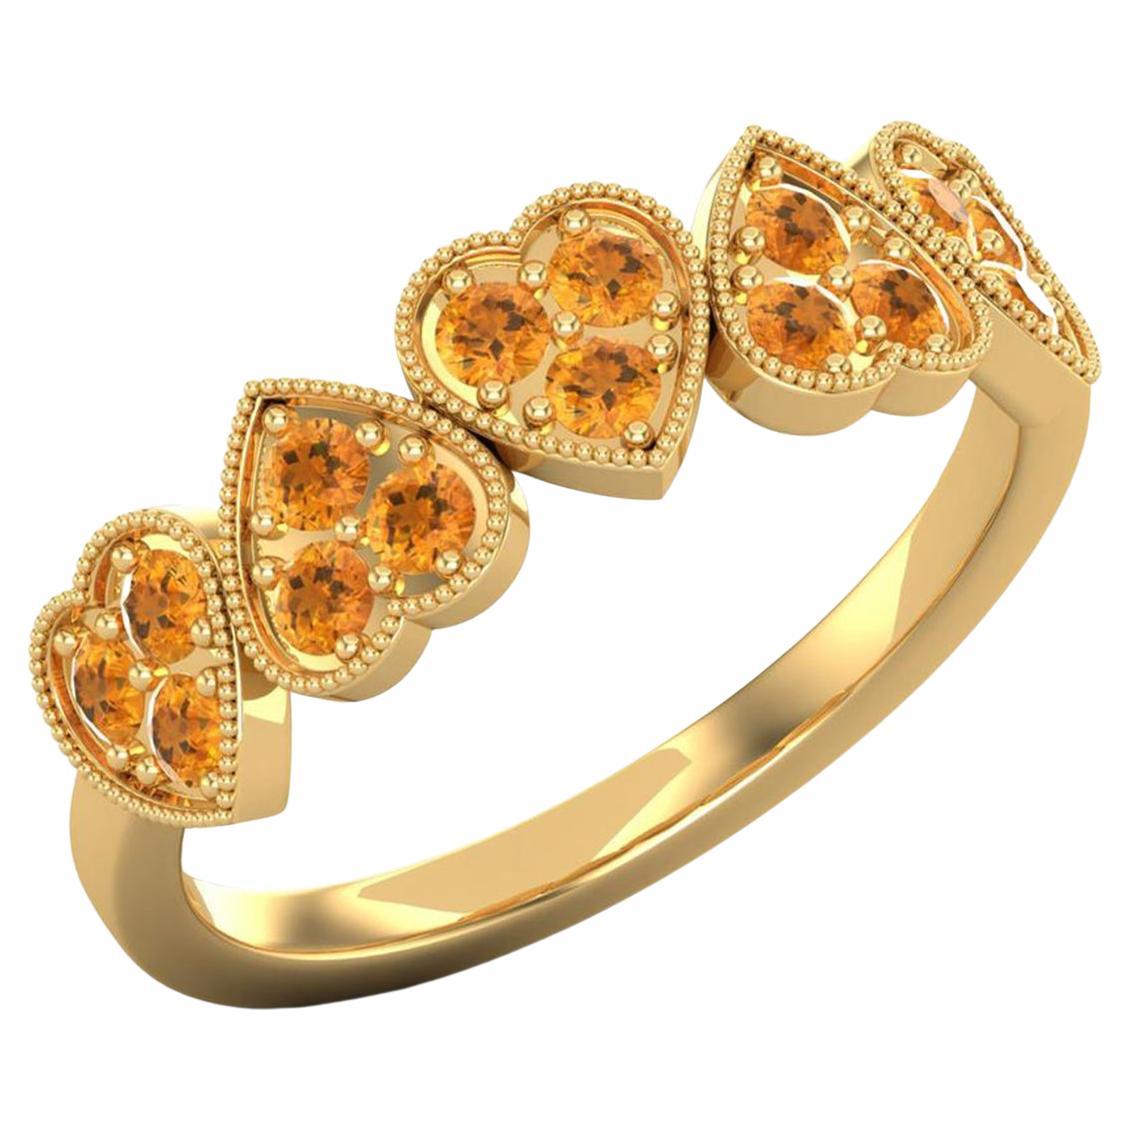 14 Karat Gold Citrine Ring / November Birthstone Ring / Heart Ring for Her